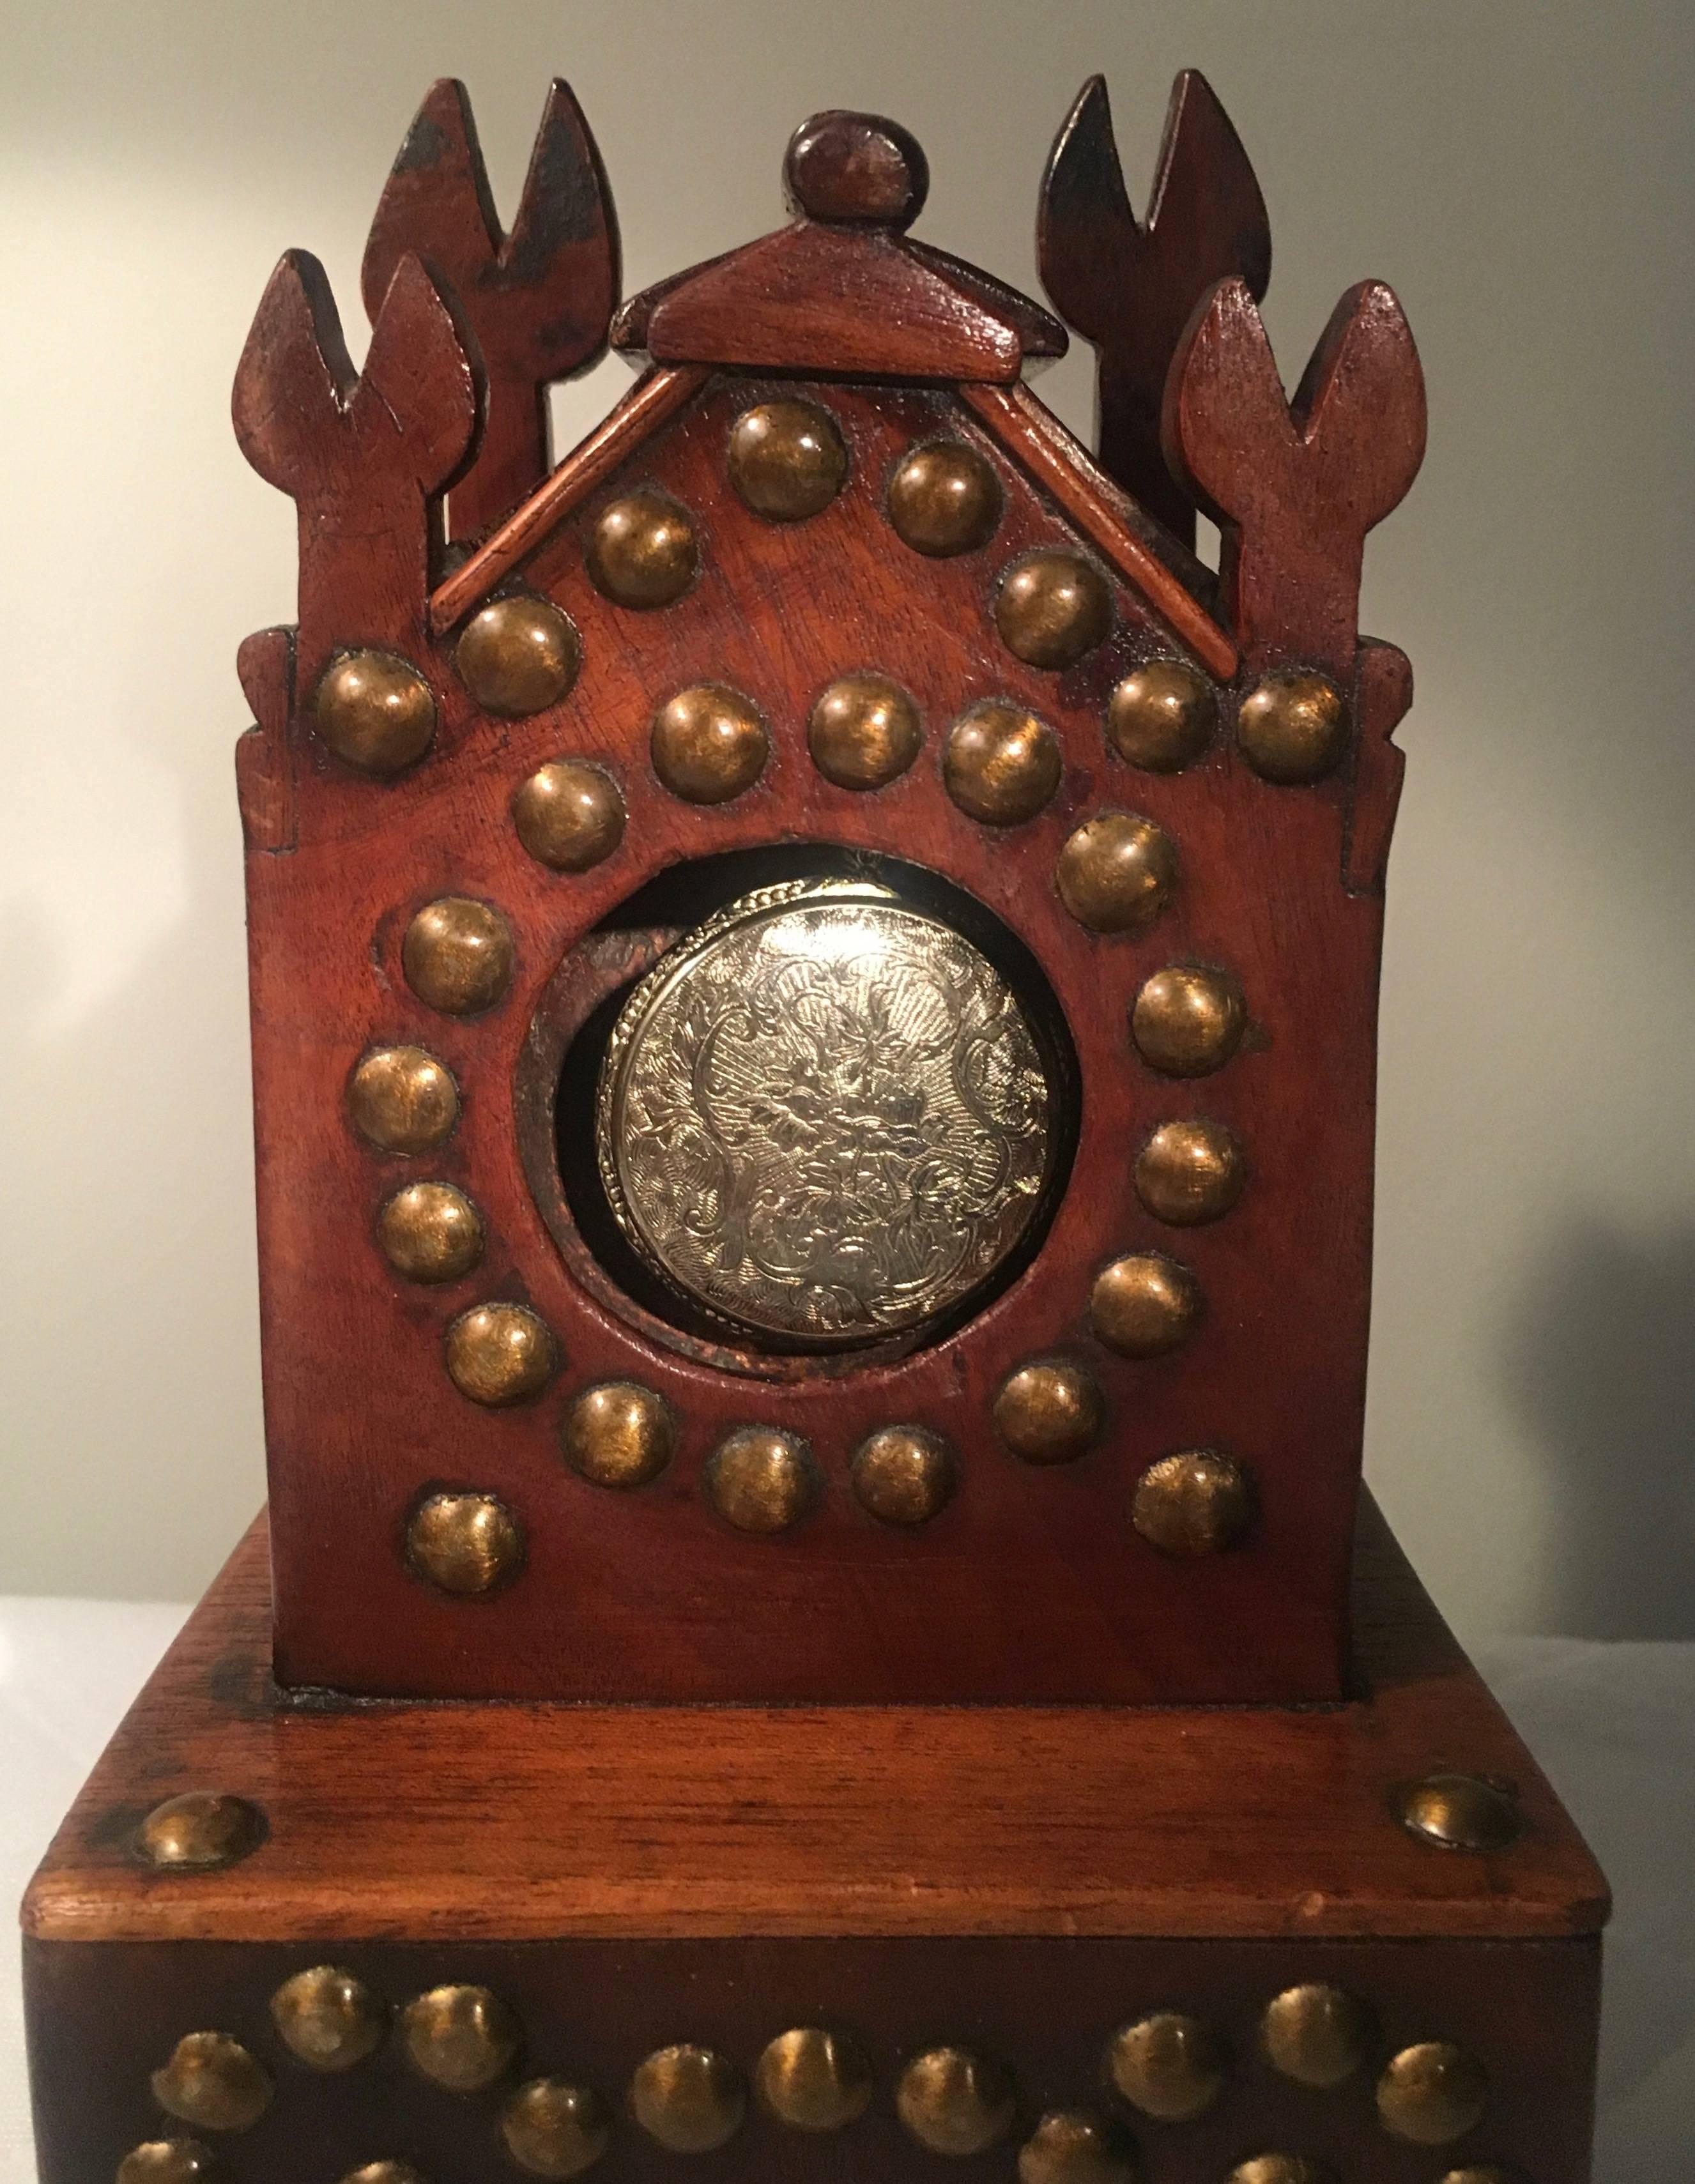 19. Jahrhundert Folk Art Taschenuhrhalter aus Holz und Messing. Einzigartiger und mit Sicherheit einzigartiger Uhrenhalter, der einen verzierten Uhrenturm darstellt, der Ihre Uhr repräsentiert. Das Design und die Verwendung von Messingnagelköpfen